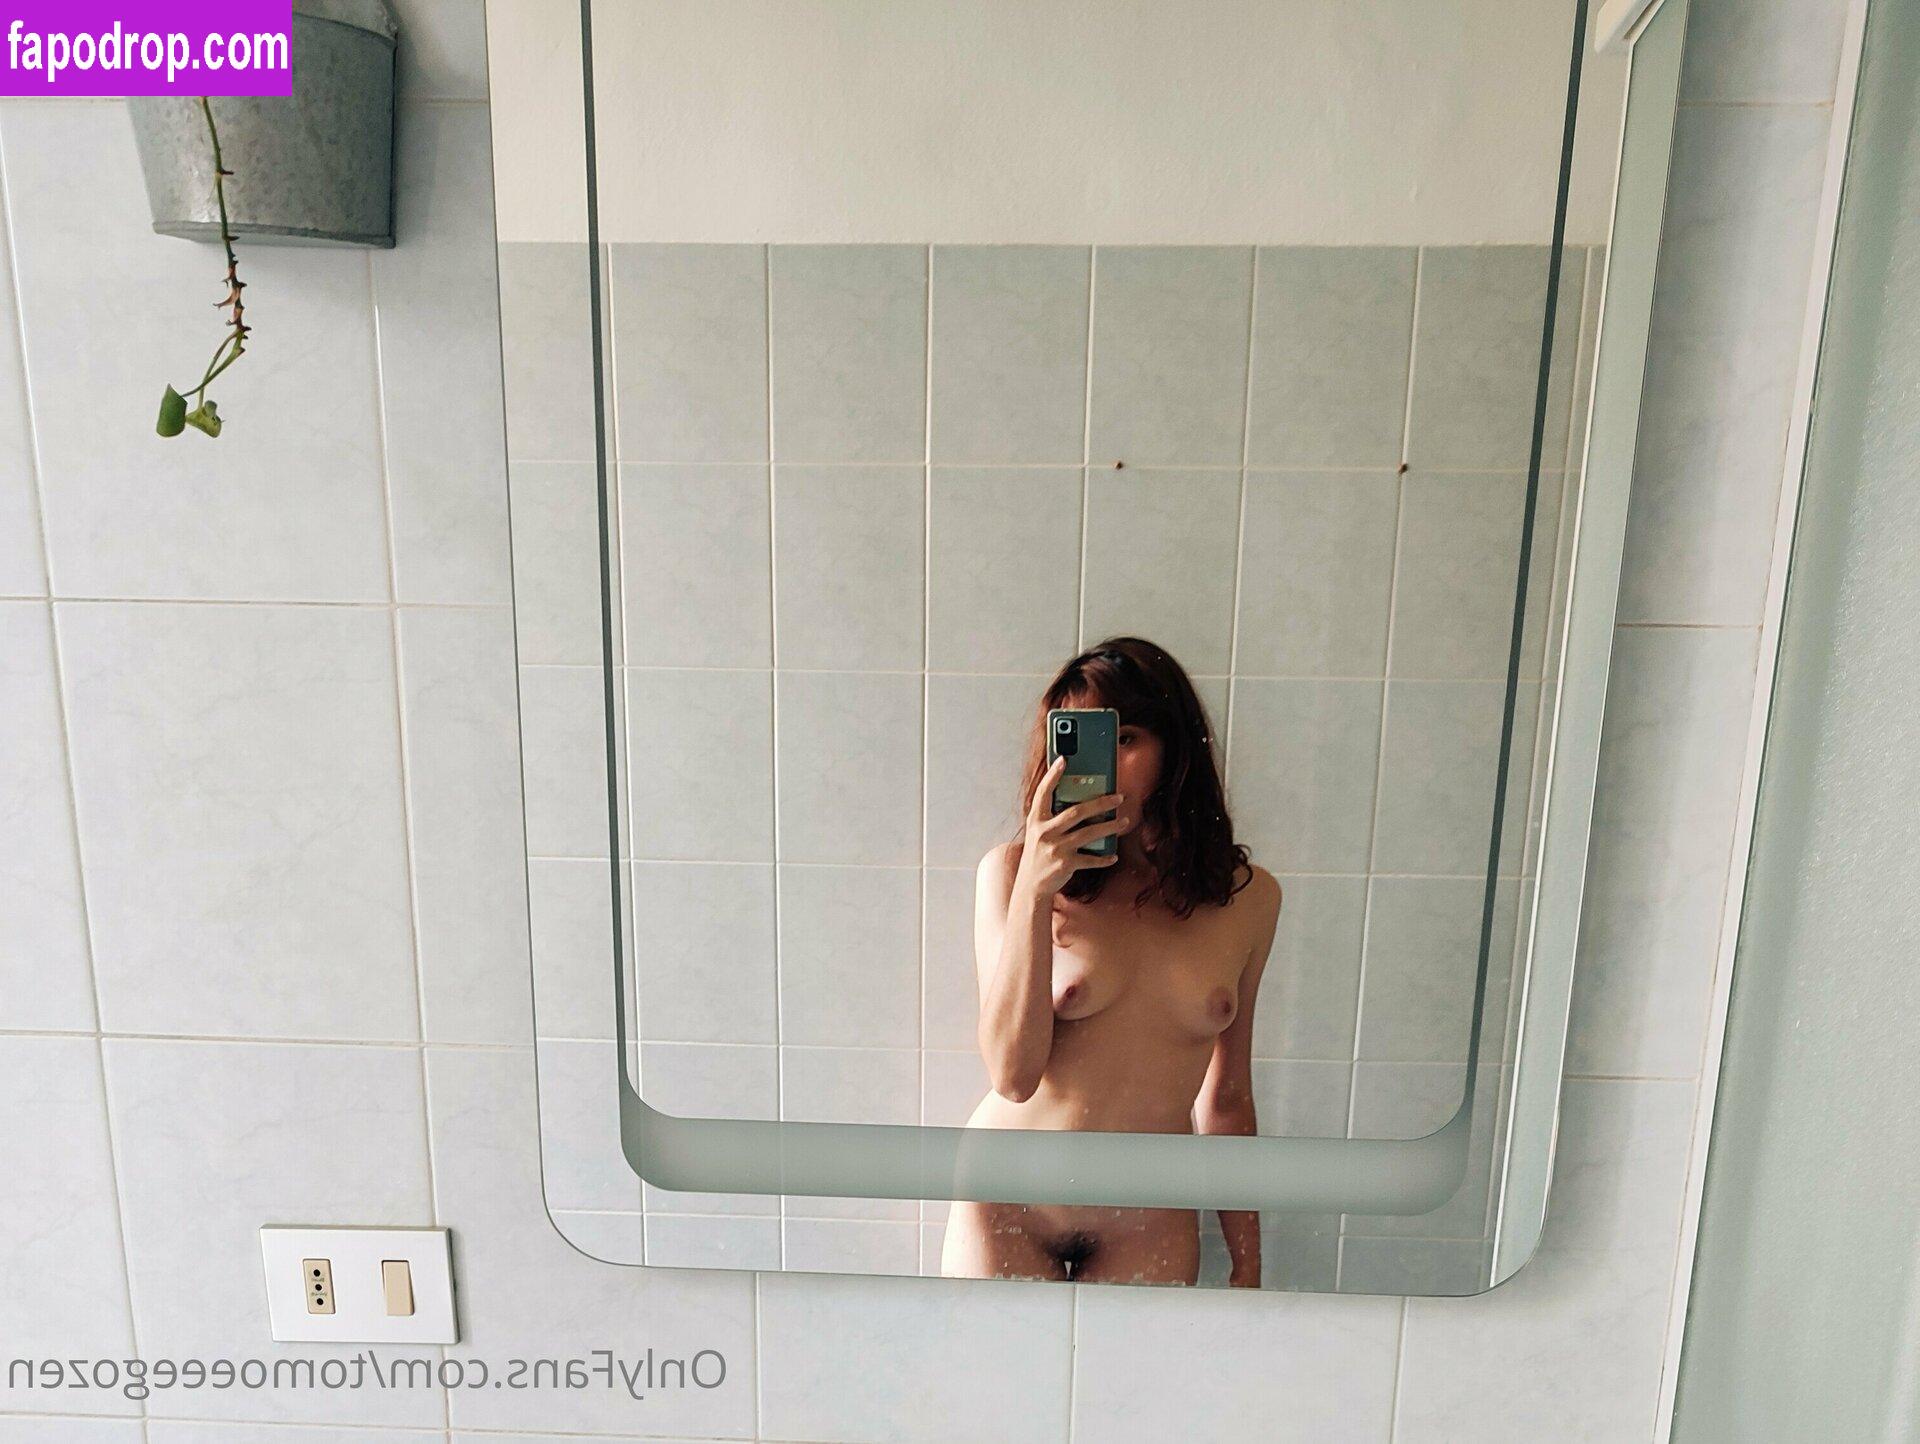 tomoeeegozen / blazedandbeautiful leak of nude photo #0005 from OnlyFans or Patreon